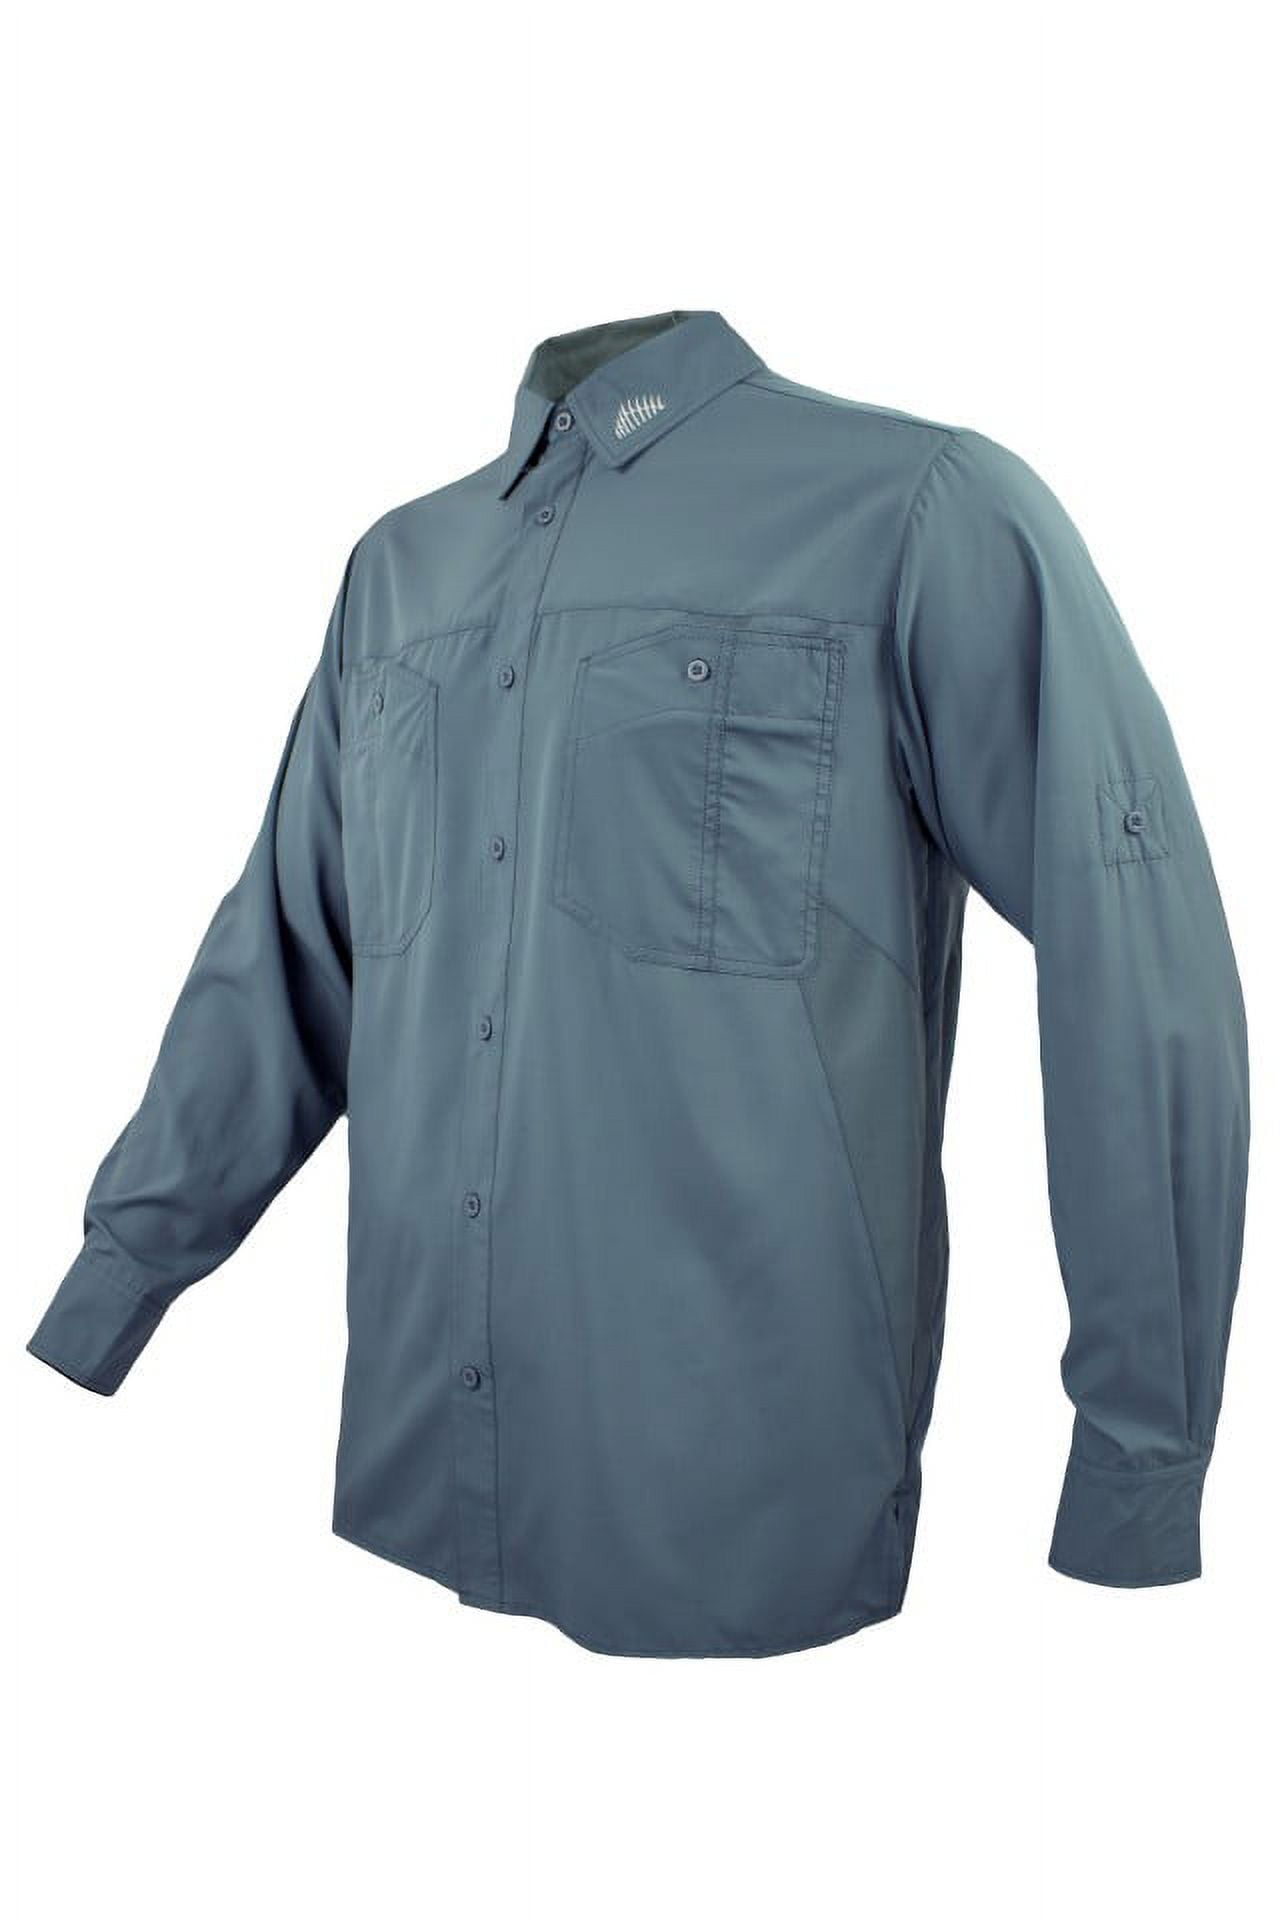 FinTech Men's Long Sleeve Fishing Shirt - XL 